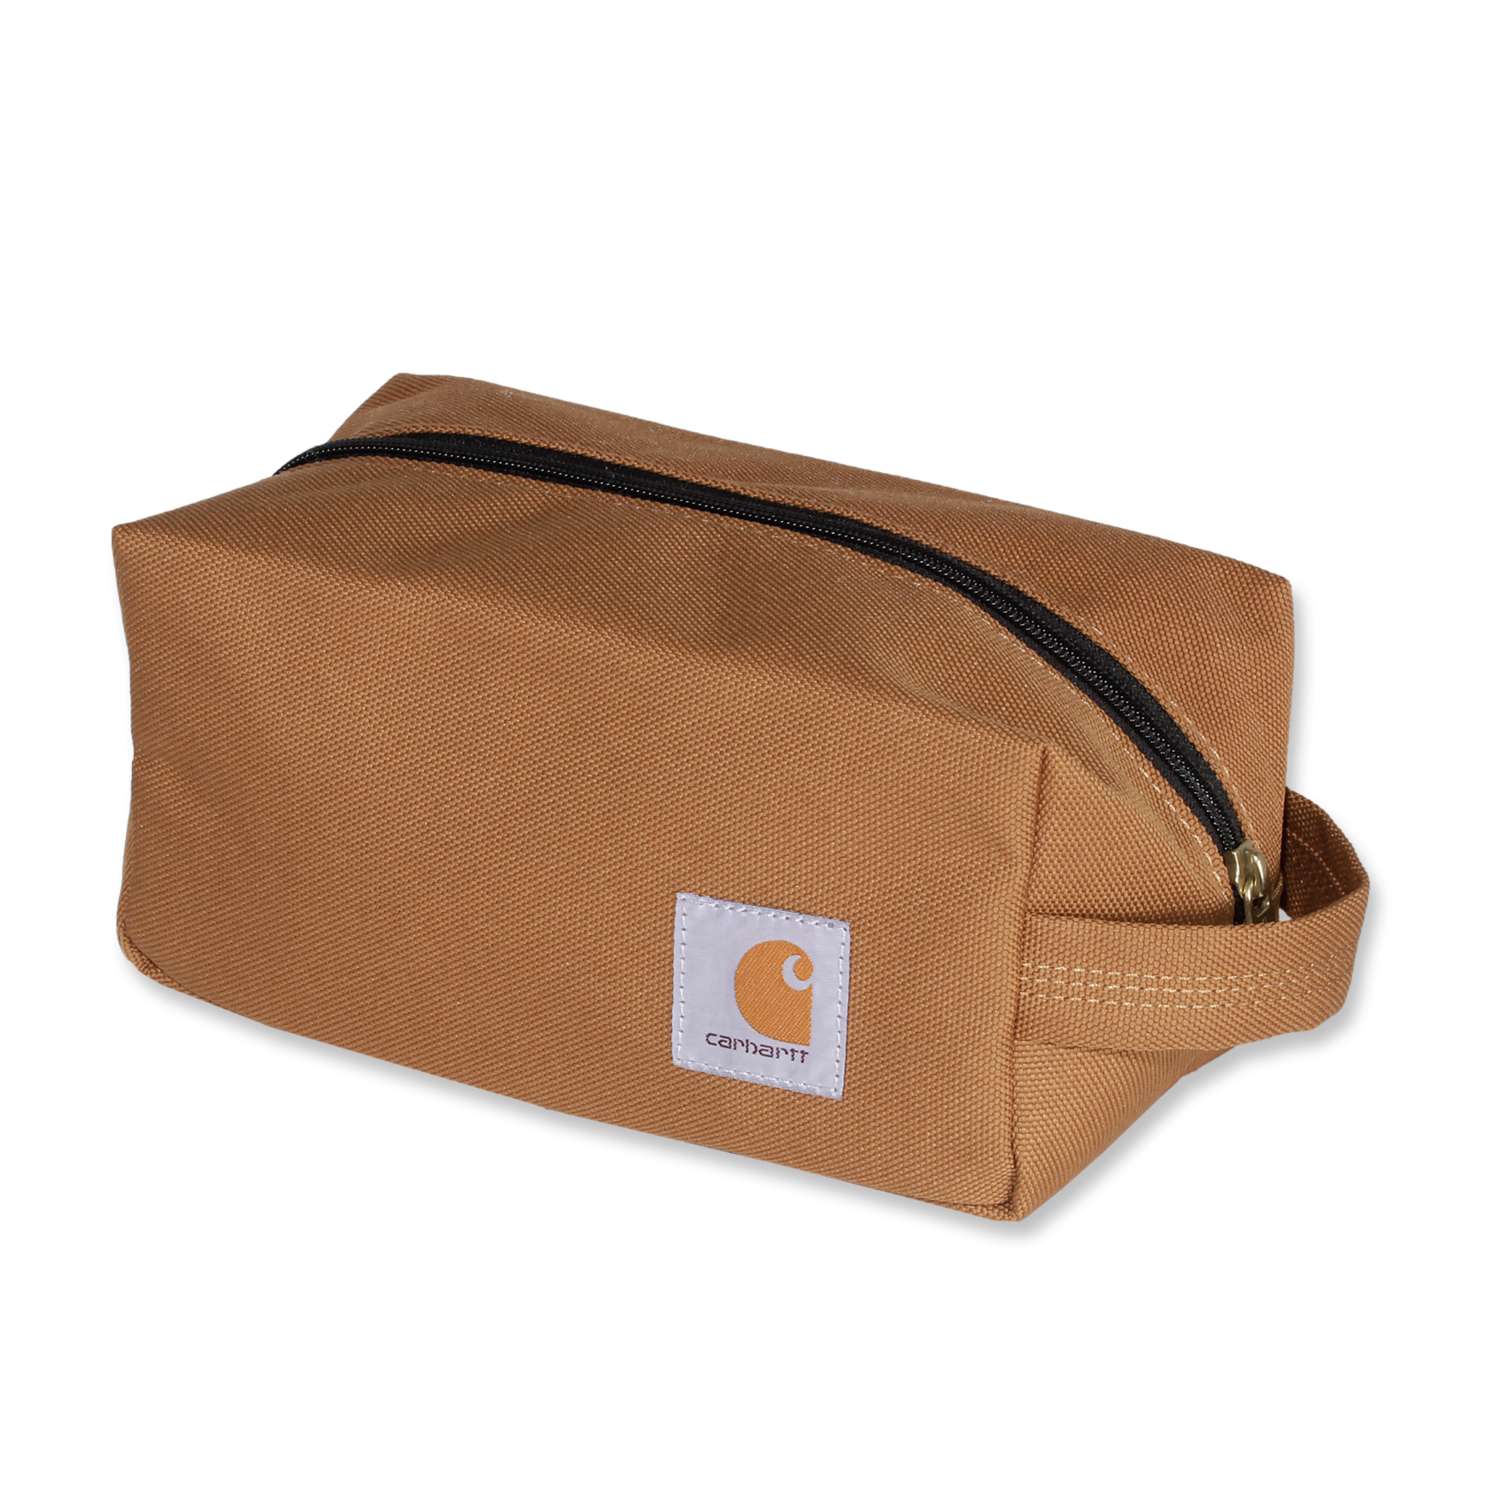 carhartt® Herren-Tasche »TRAVEL KIT« - One Size, carhartt® brown - erhältlich bei ✌ HUG Technik ✓